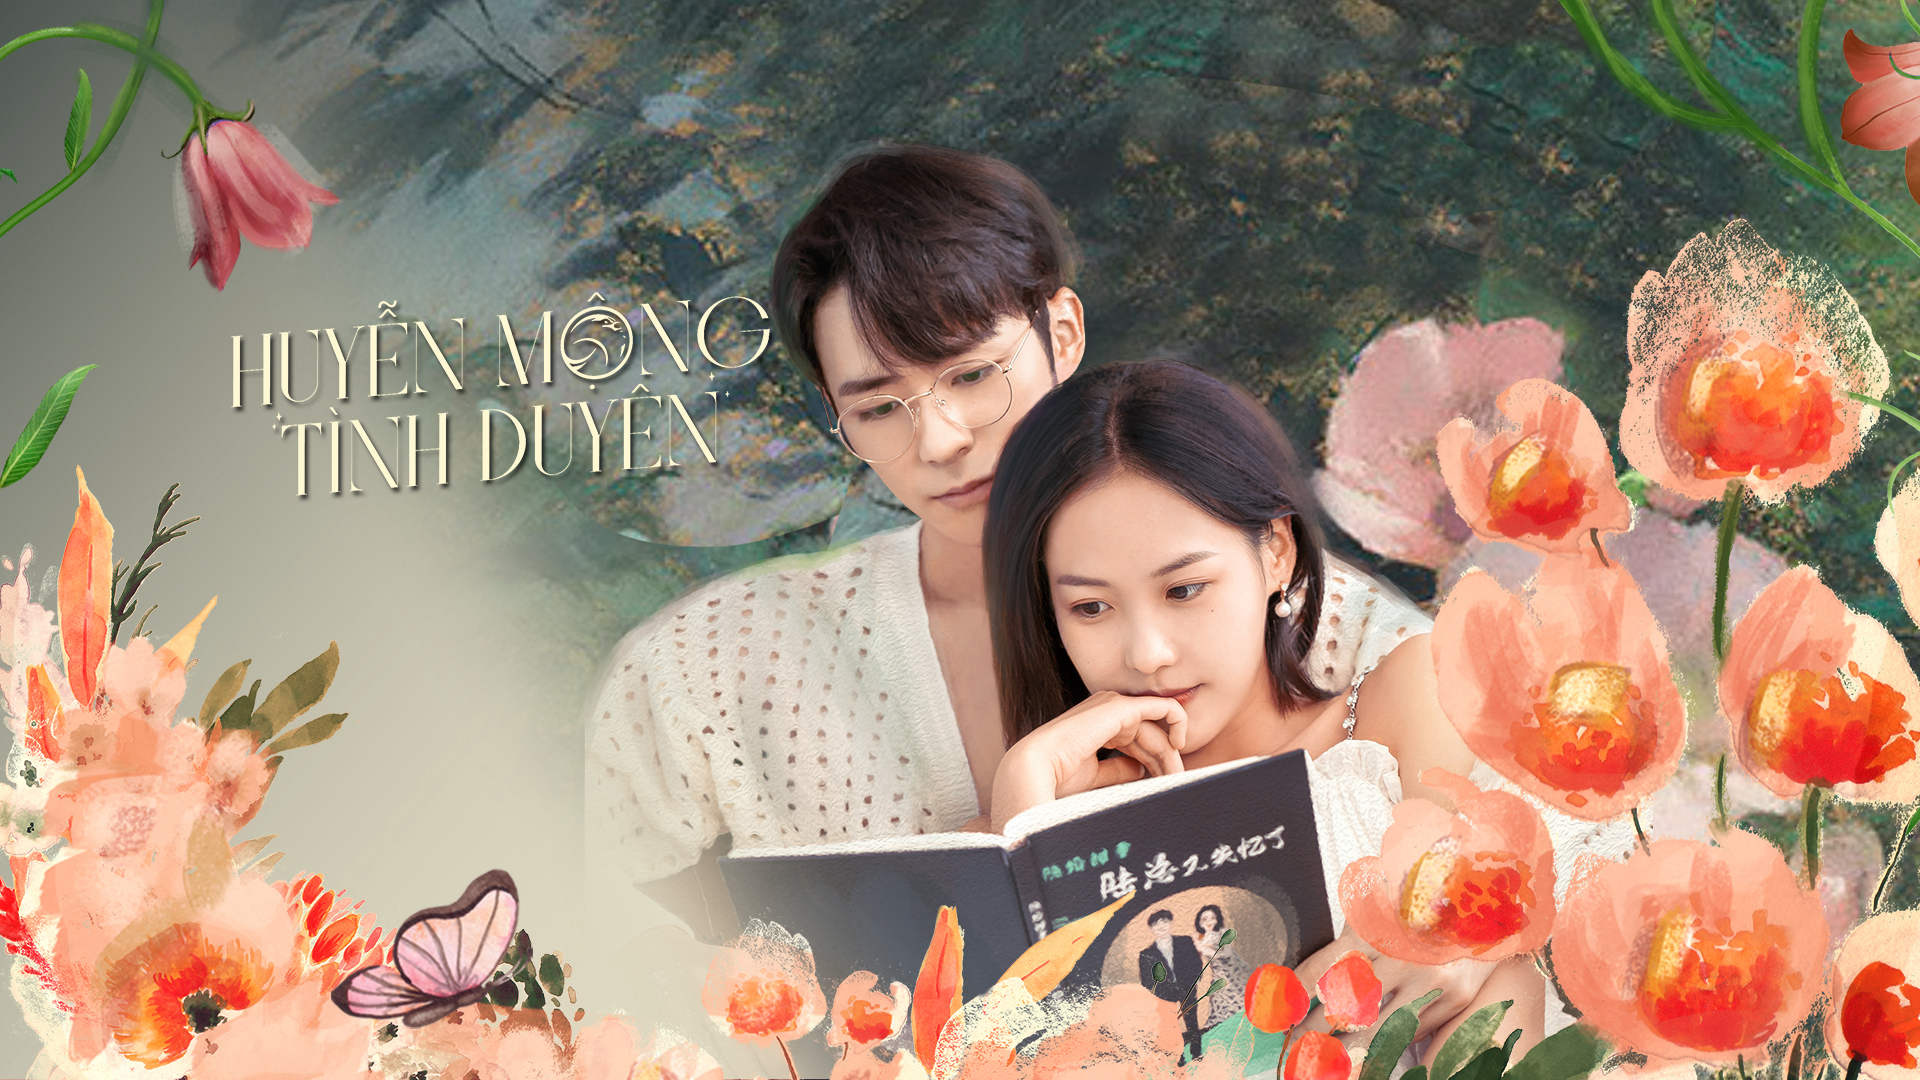 Poster Phim Huyễn Mộng Tình Duyên (Beyond Romance)